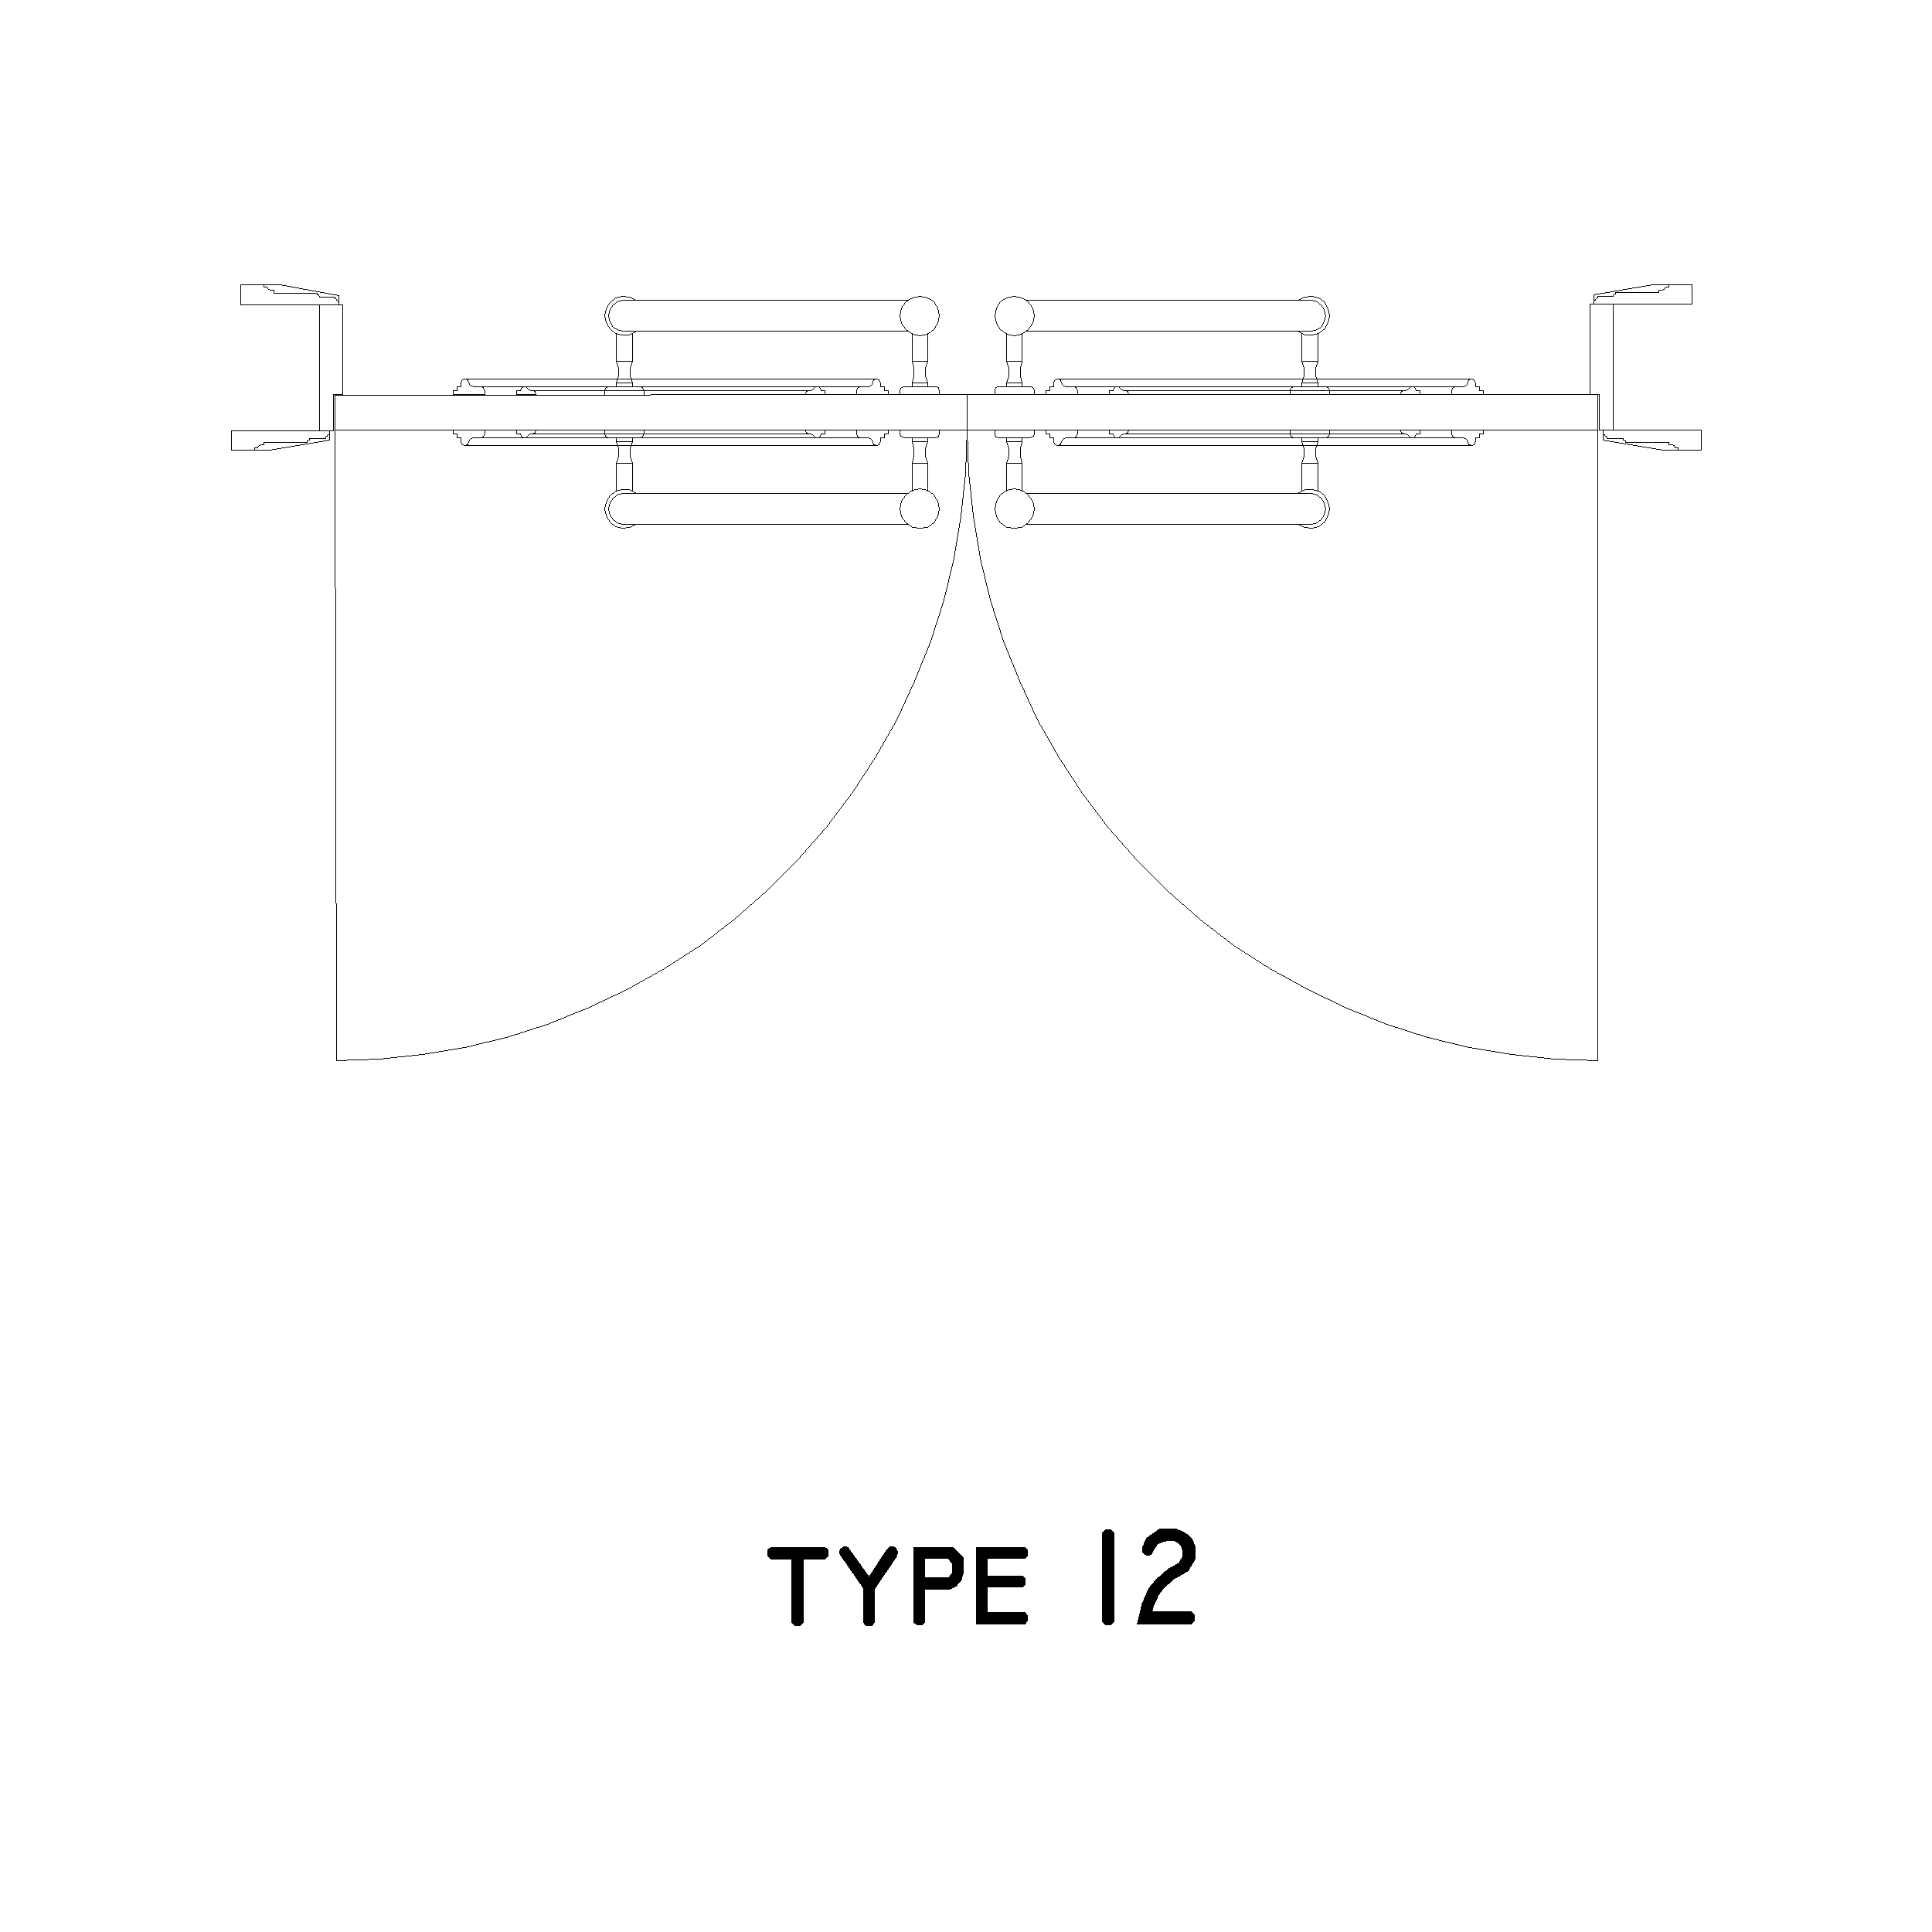 Type 12 Door Plan: 2D Top View Plan - Cadblockdwg